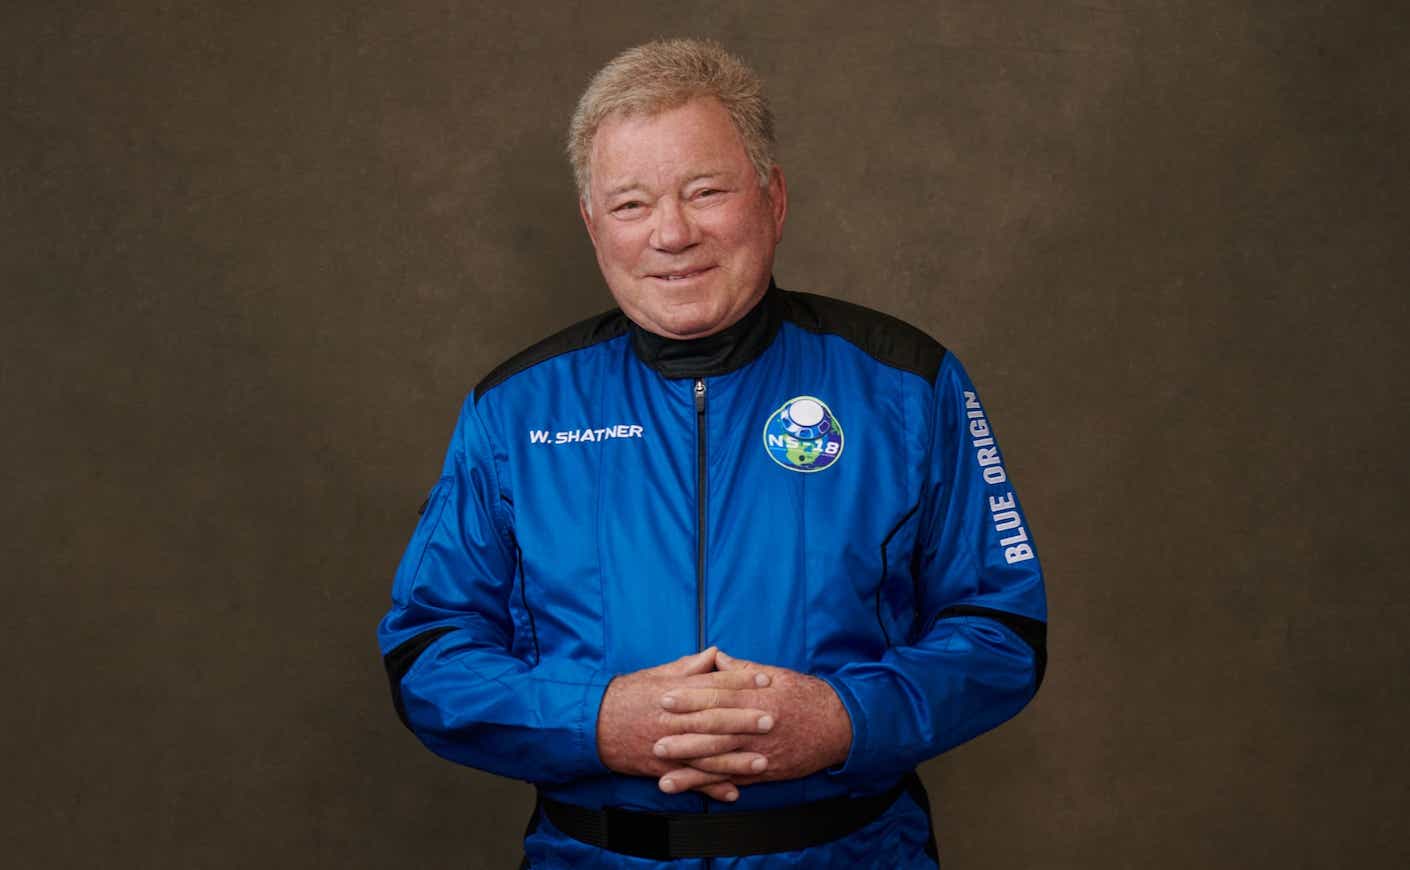 william shatner in his blue space suit